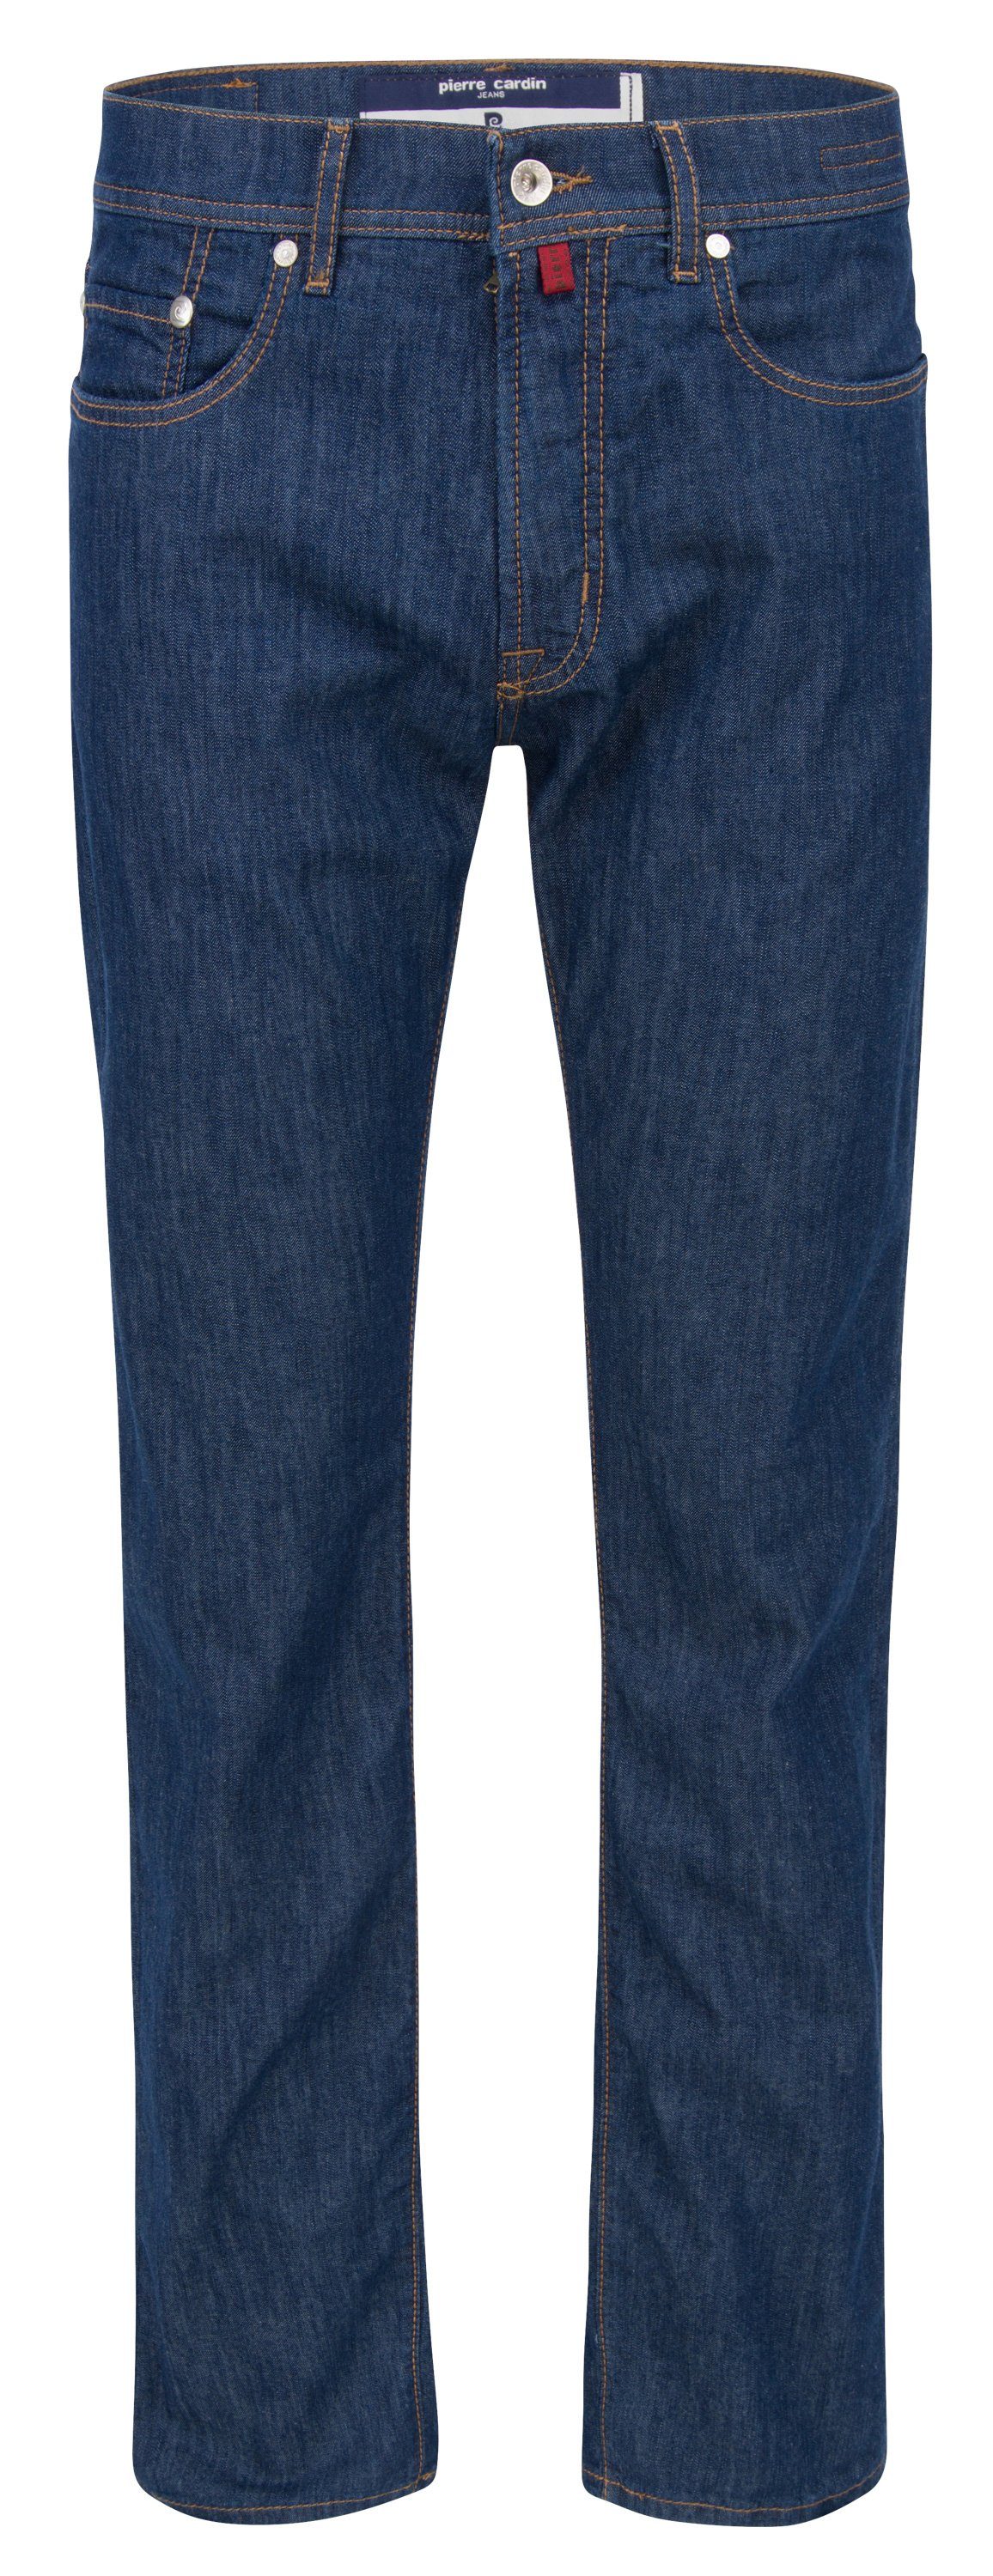 Pierre Cardin 5-Pocket-Jeans PIERRE CARDIN LYON light denim rinsed blue 3091 7553.07 | Jeans